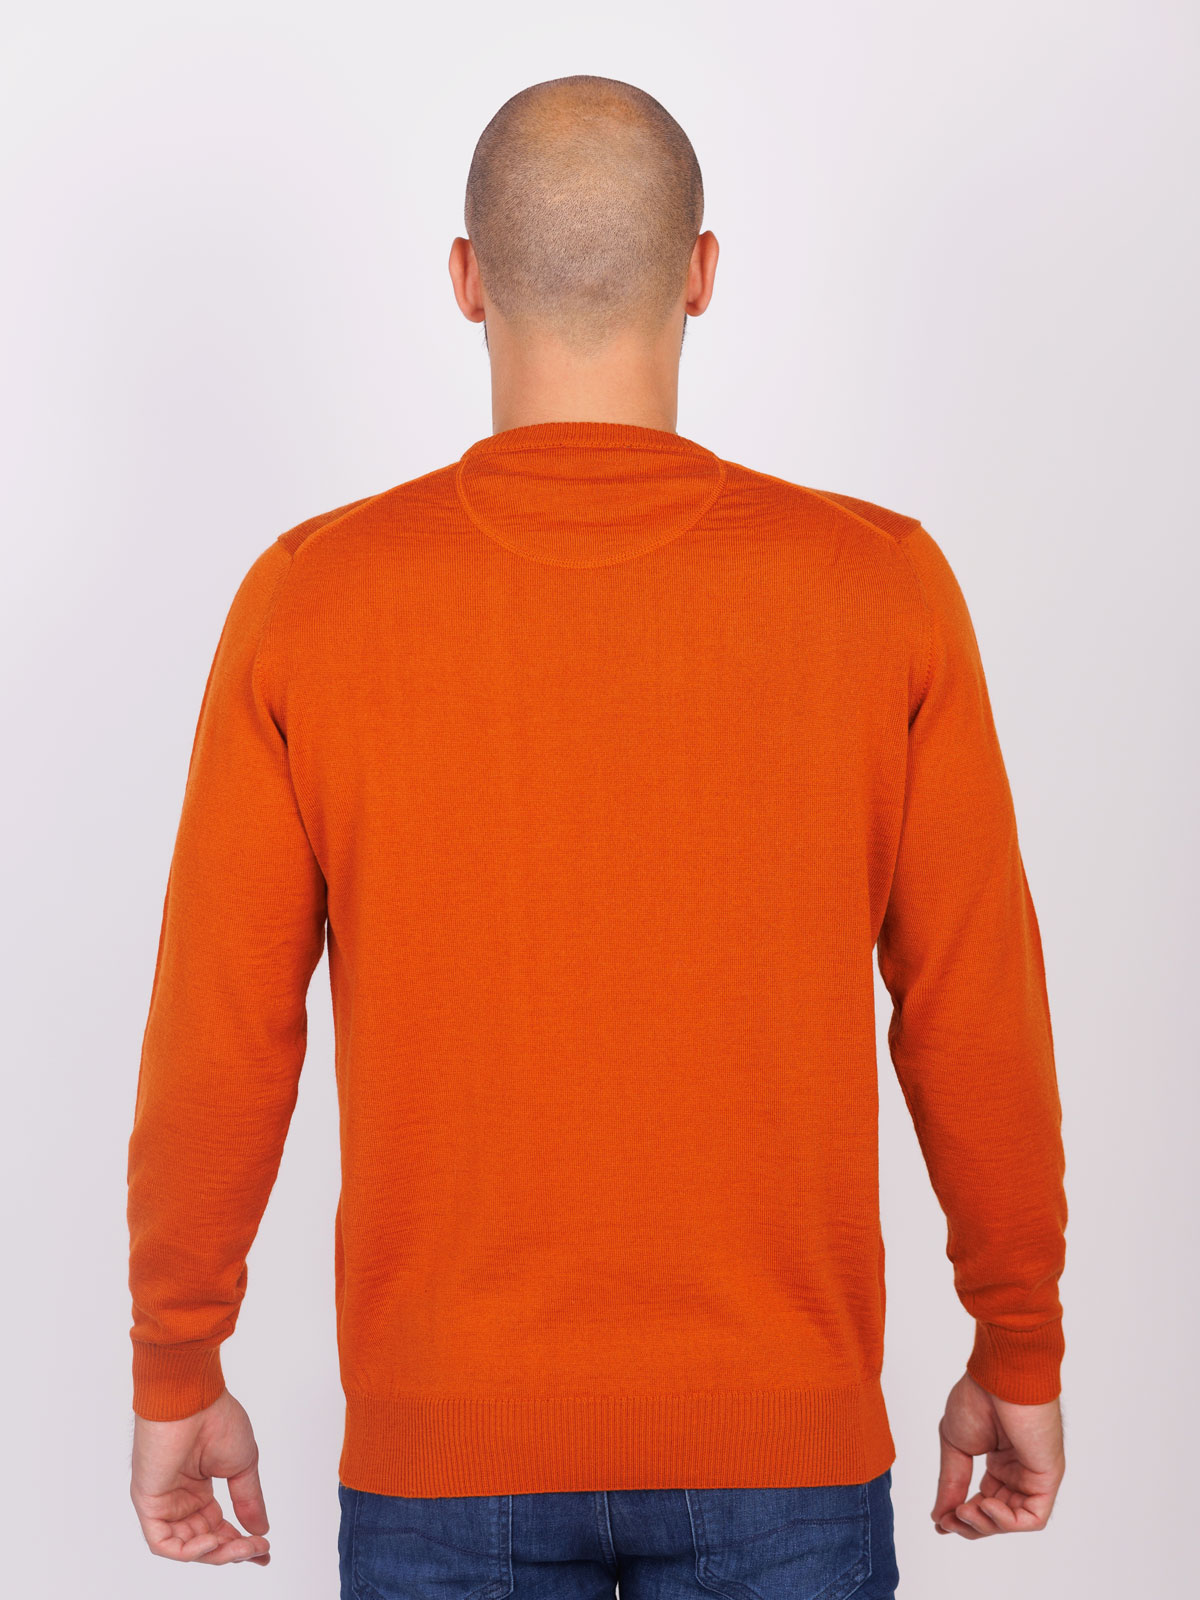 Μάλλινο πουλόβερ σε πορτοκαλί χρώμα - 33099 € 42.74 img2